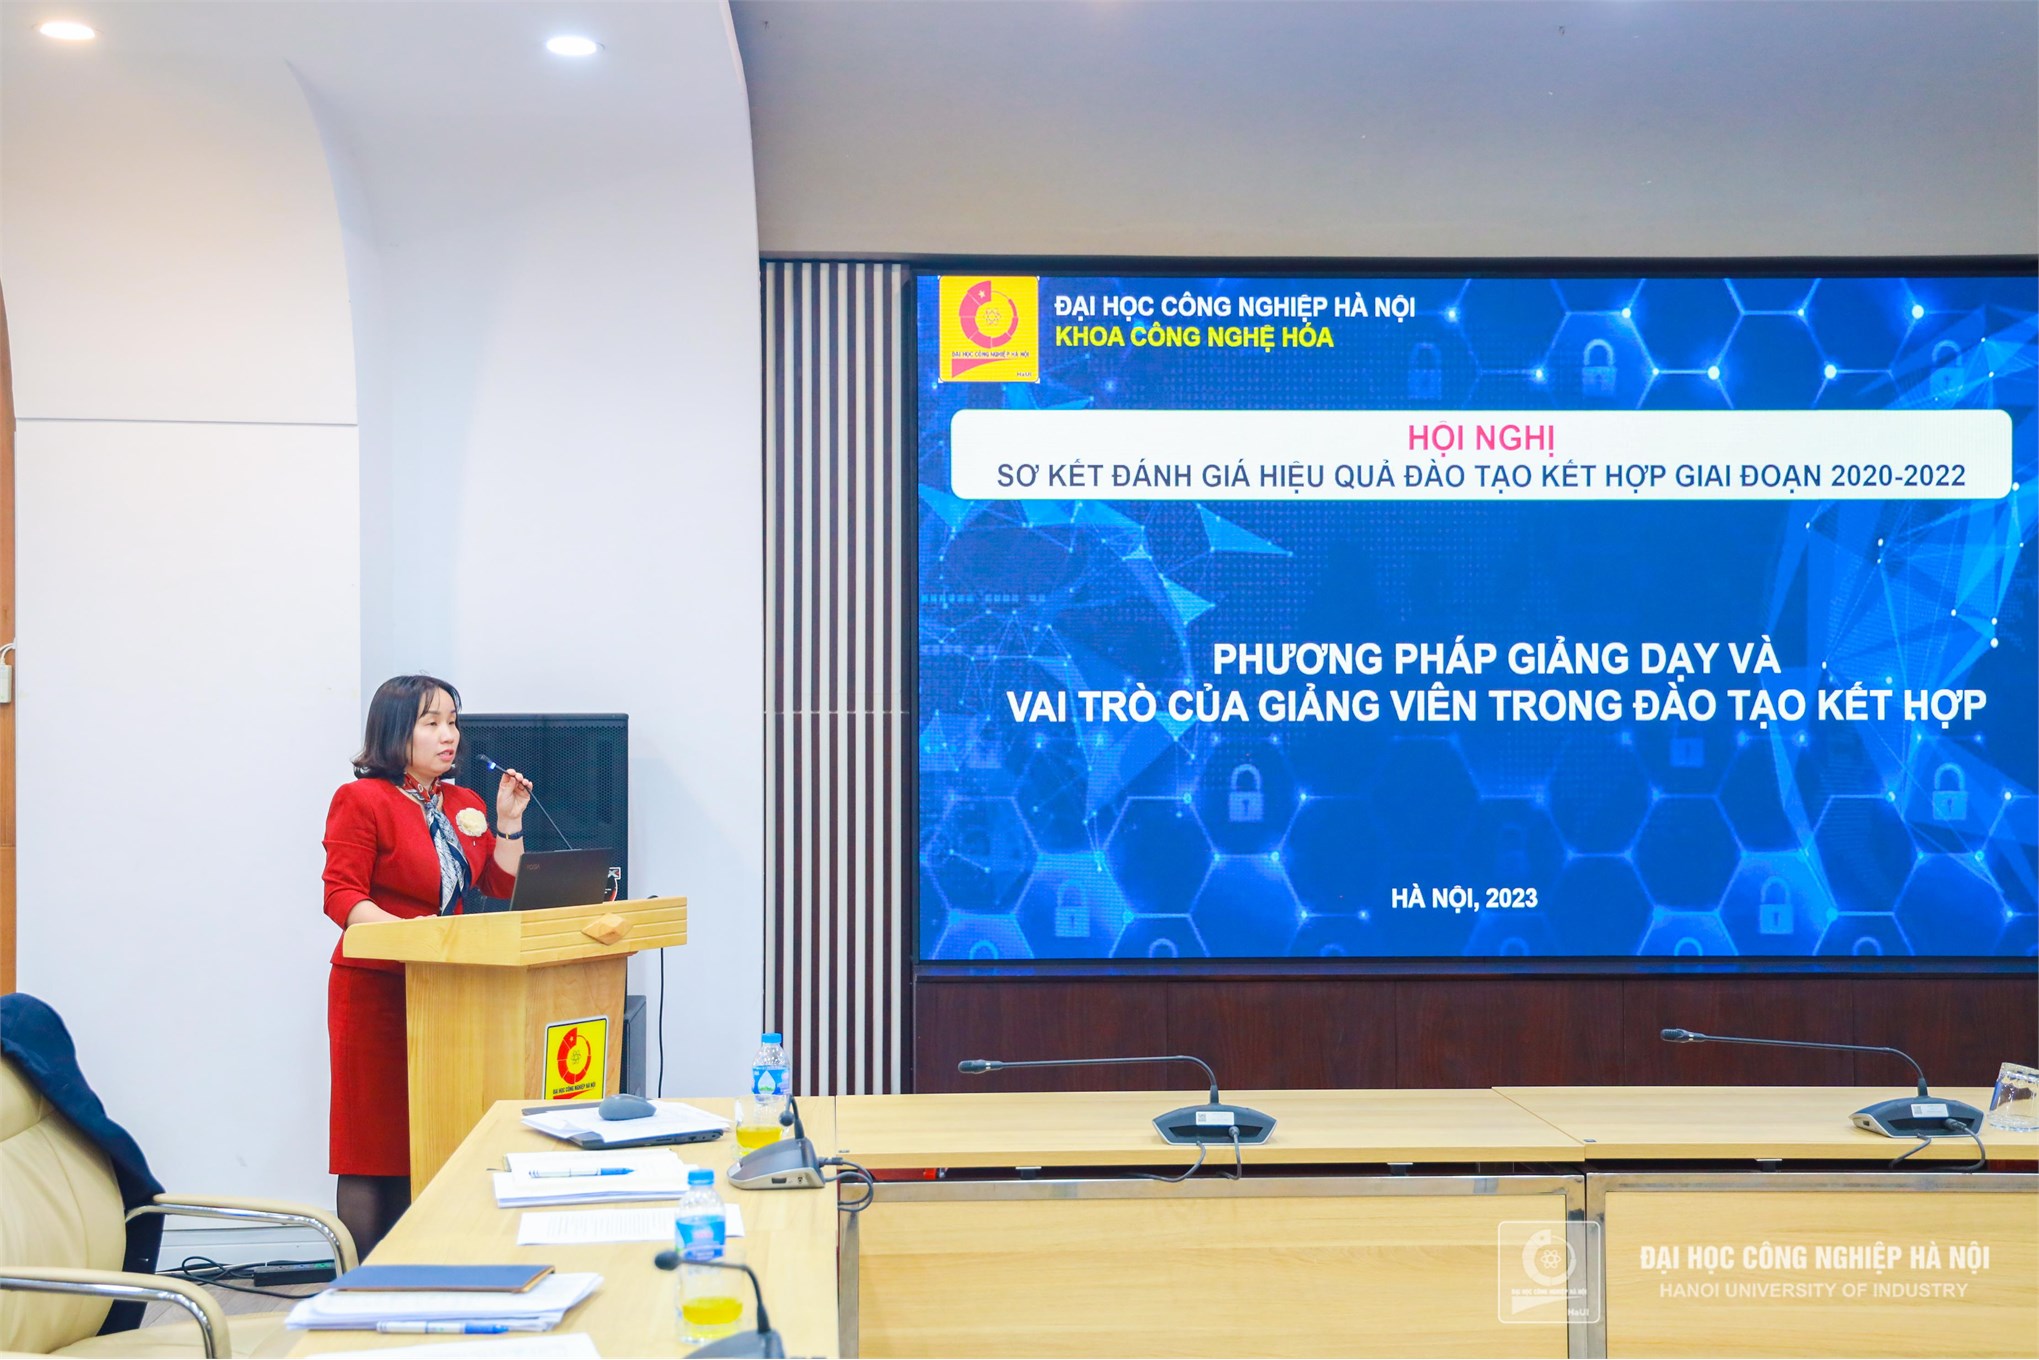 PGS.TS.Phạm Thị Mai Hương, đại diện Khoa Công nghệ hóa trình bày tham luận “Phương pháp giảng dạy và vai trò của giảng viên trong đào tạo kết hợp”